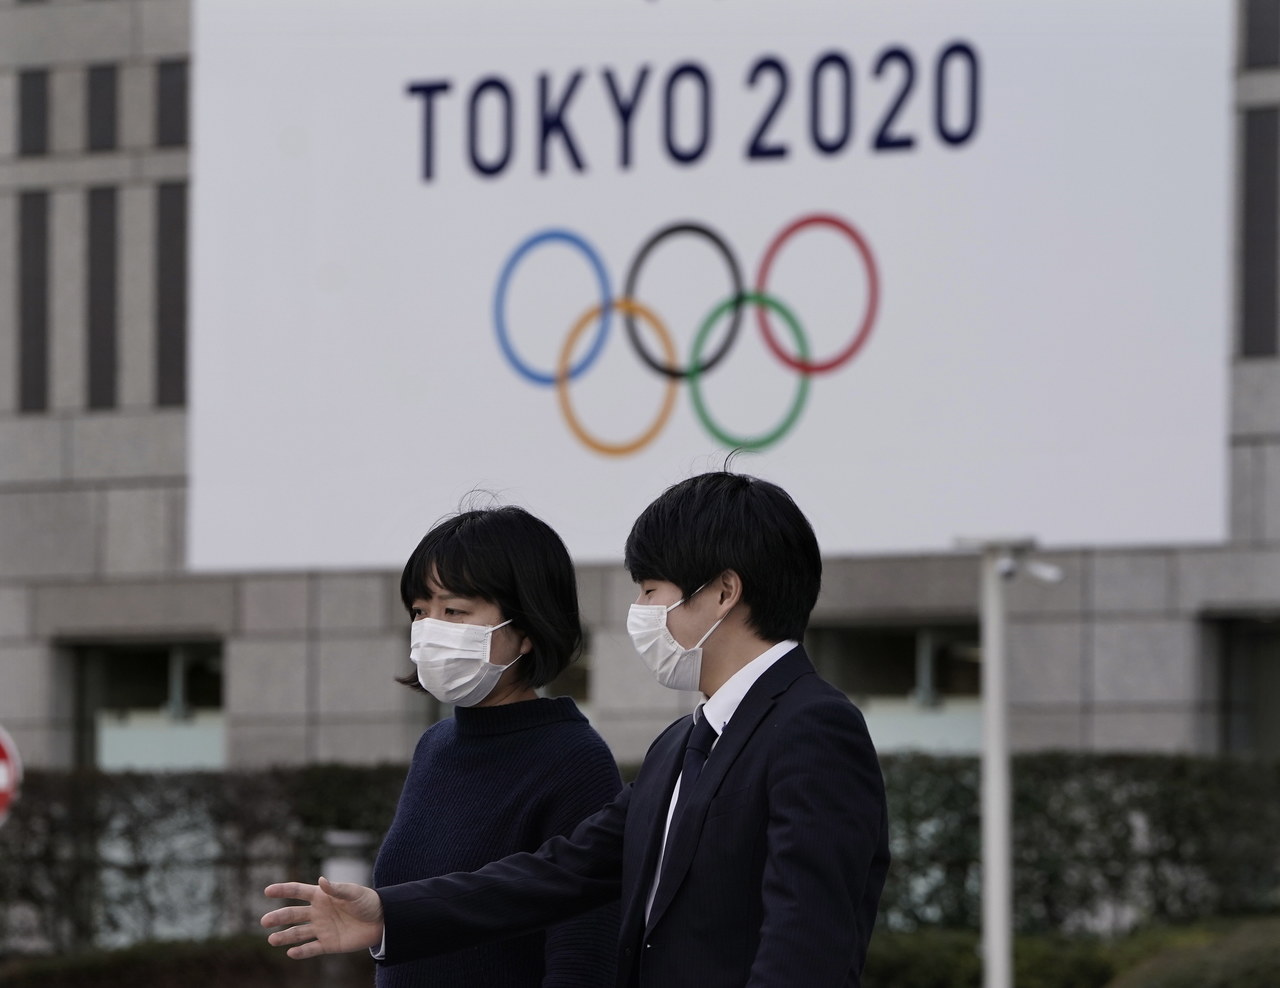 Tokio 2020: Igrzyska mogą zostać przesunięte, ale nie odwołane